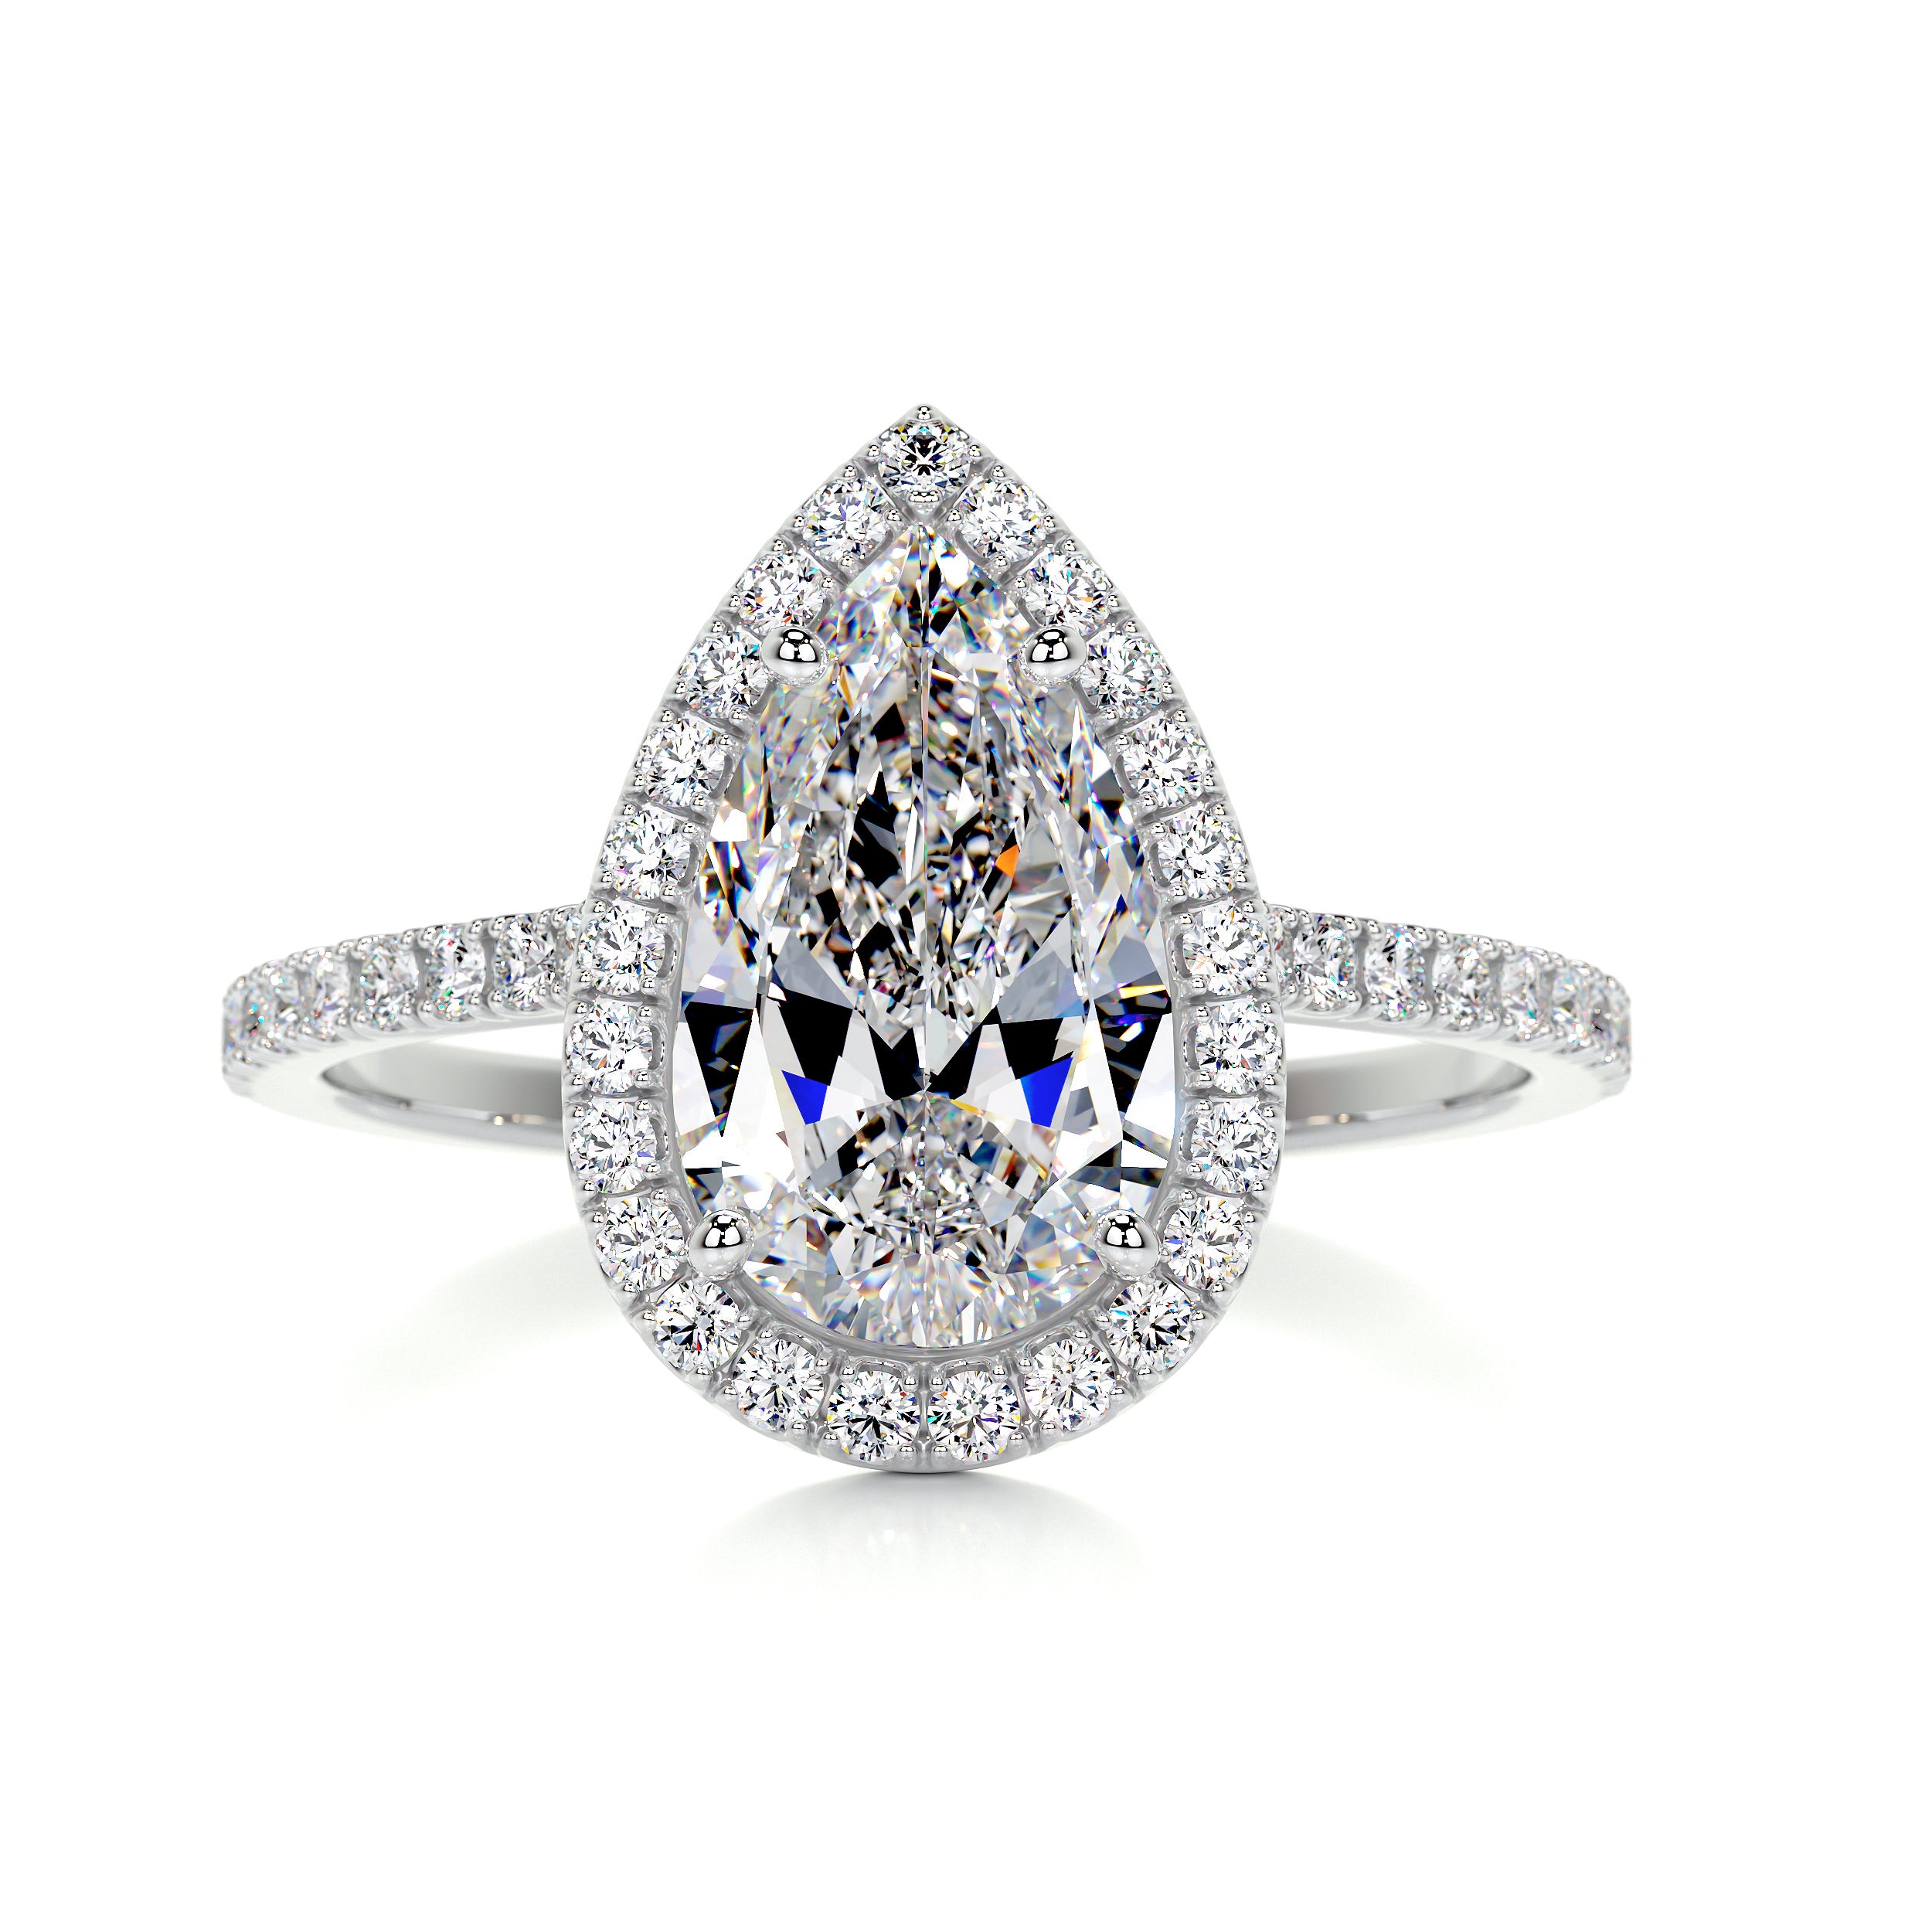 Sophia Moissanite & Diamonds Ring -14K White Gold